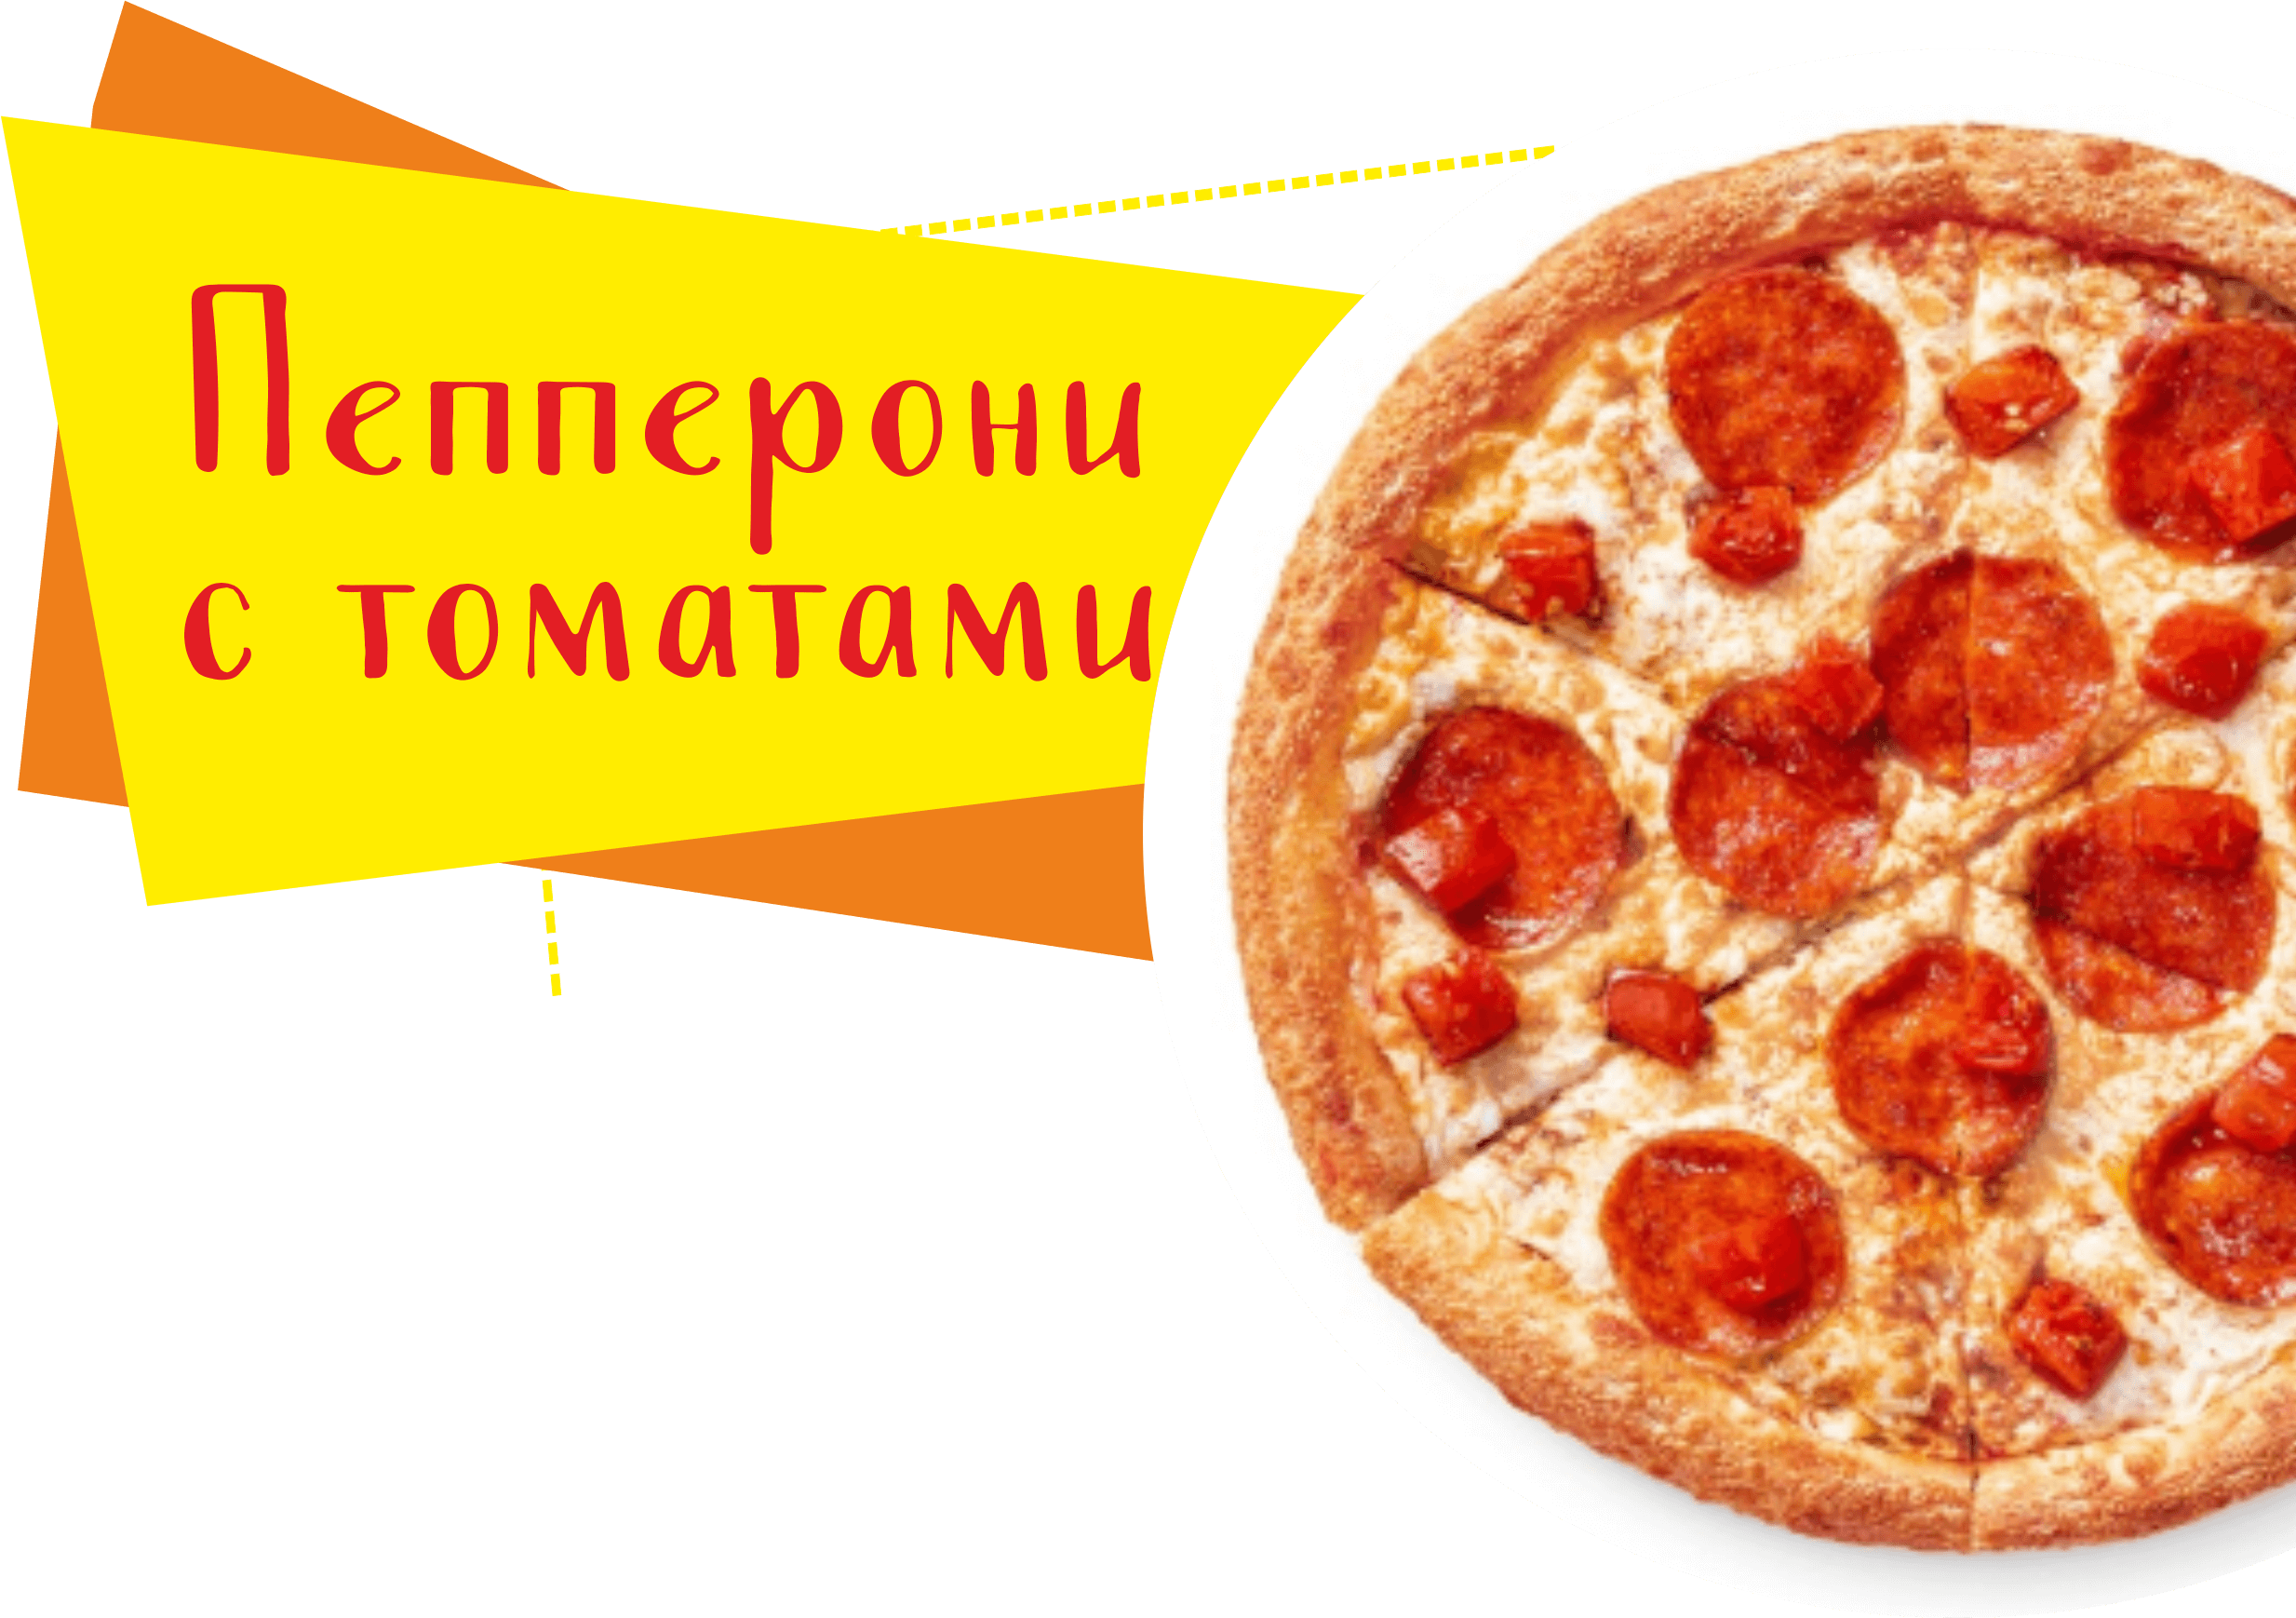 технологическая карта приготовления пиццы пепперони фото 67